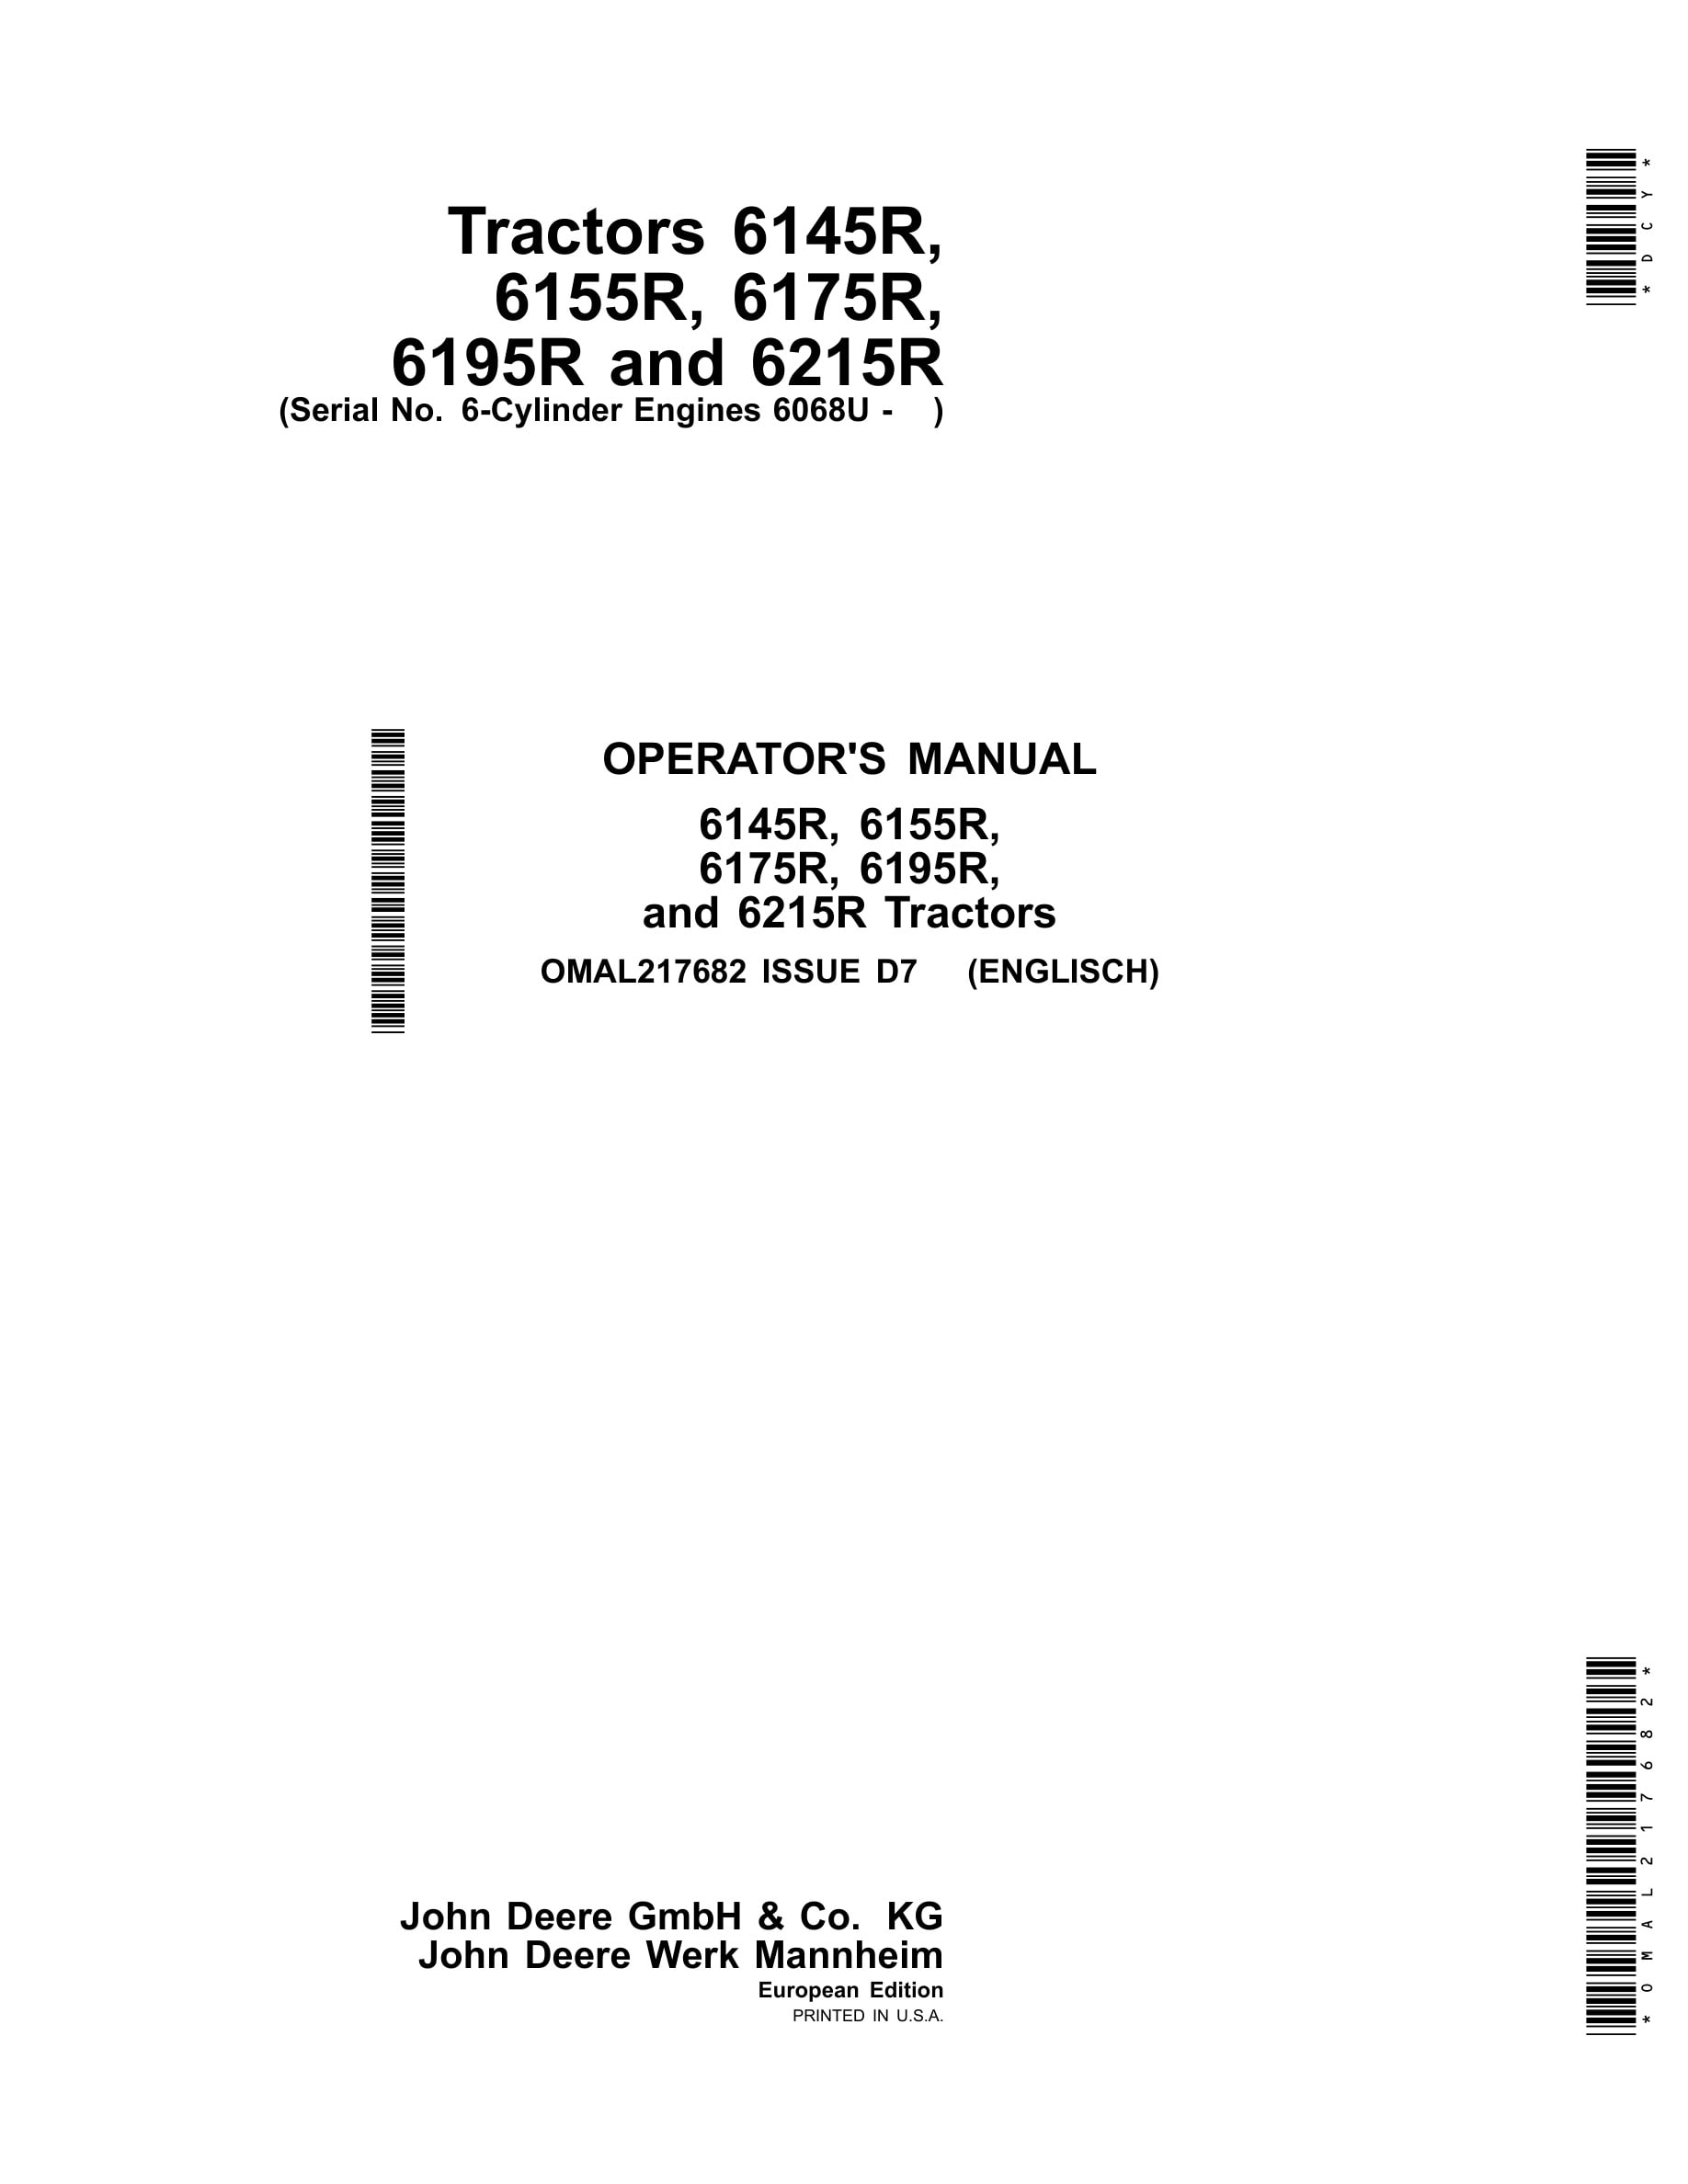 John Deere 6145r, 6155r, 6175r, 6195r, And 6215r Tractors Operator Manuals OMAL217682-1